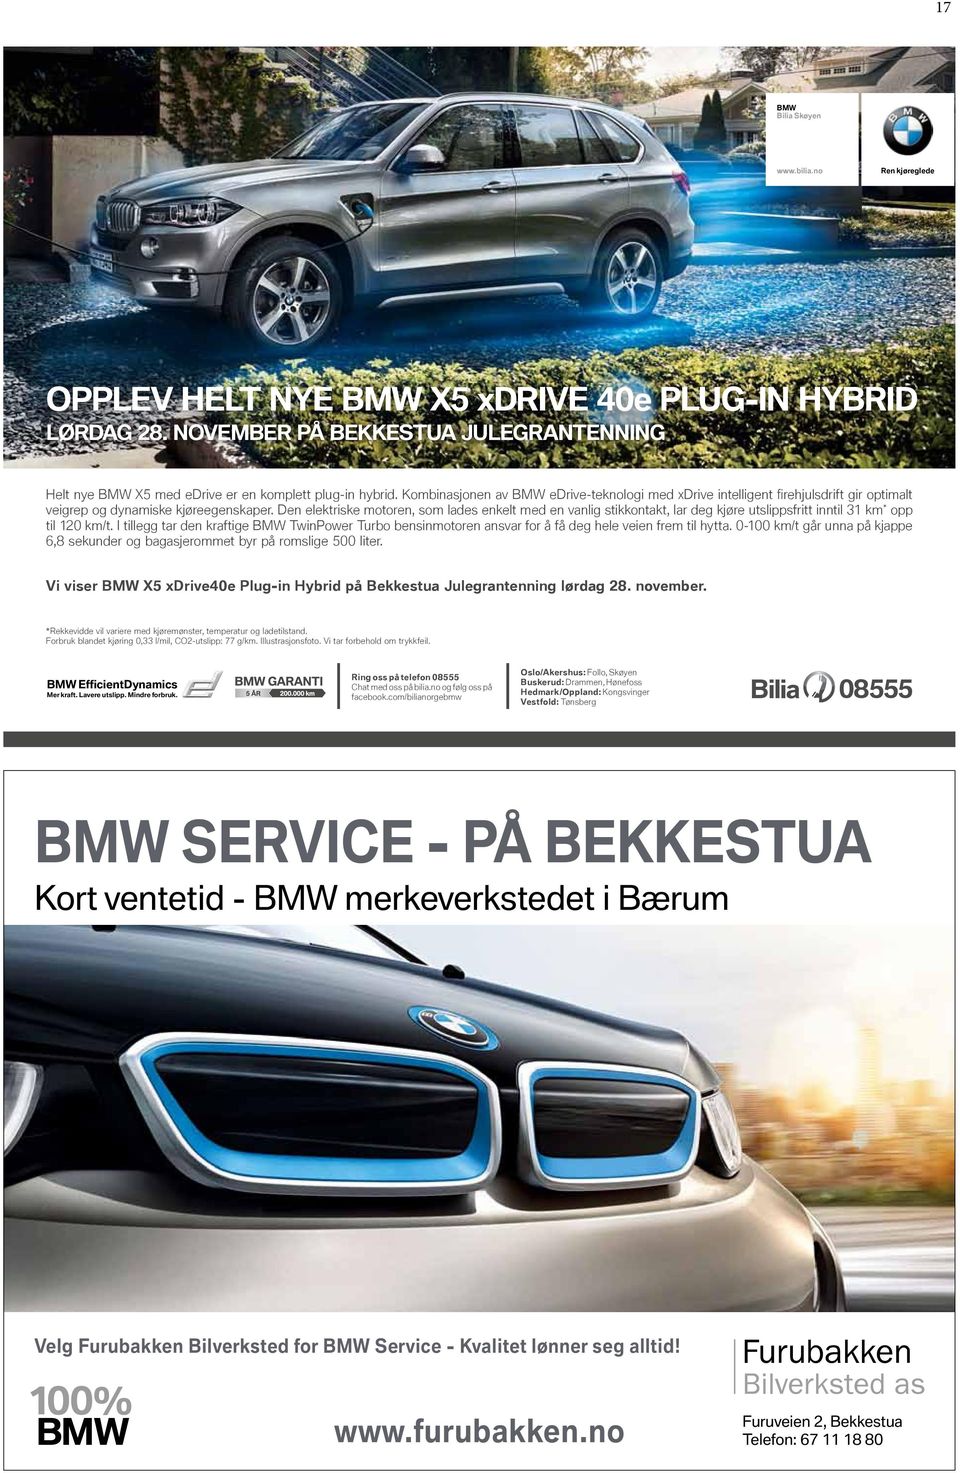 Kombinasjonen av BMW edrive-teknologi med xdrive intelligent firehjulsdrift gir optimalt veigrep og dynamiske kjøreegenskaper.